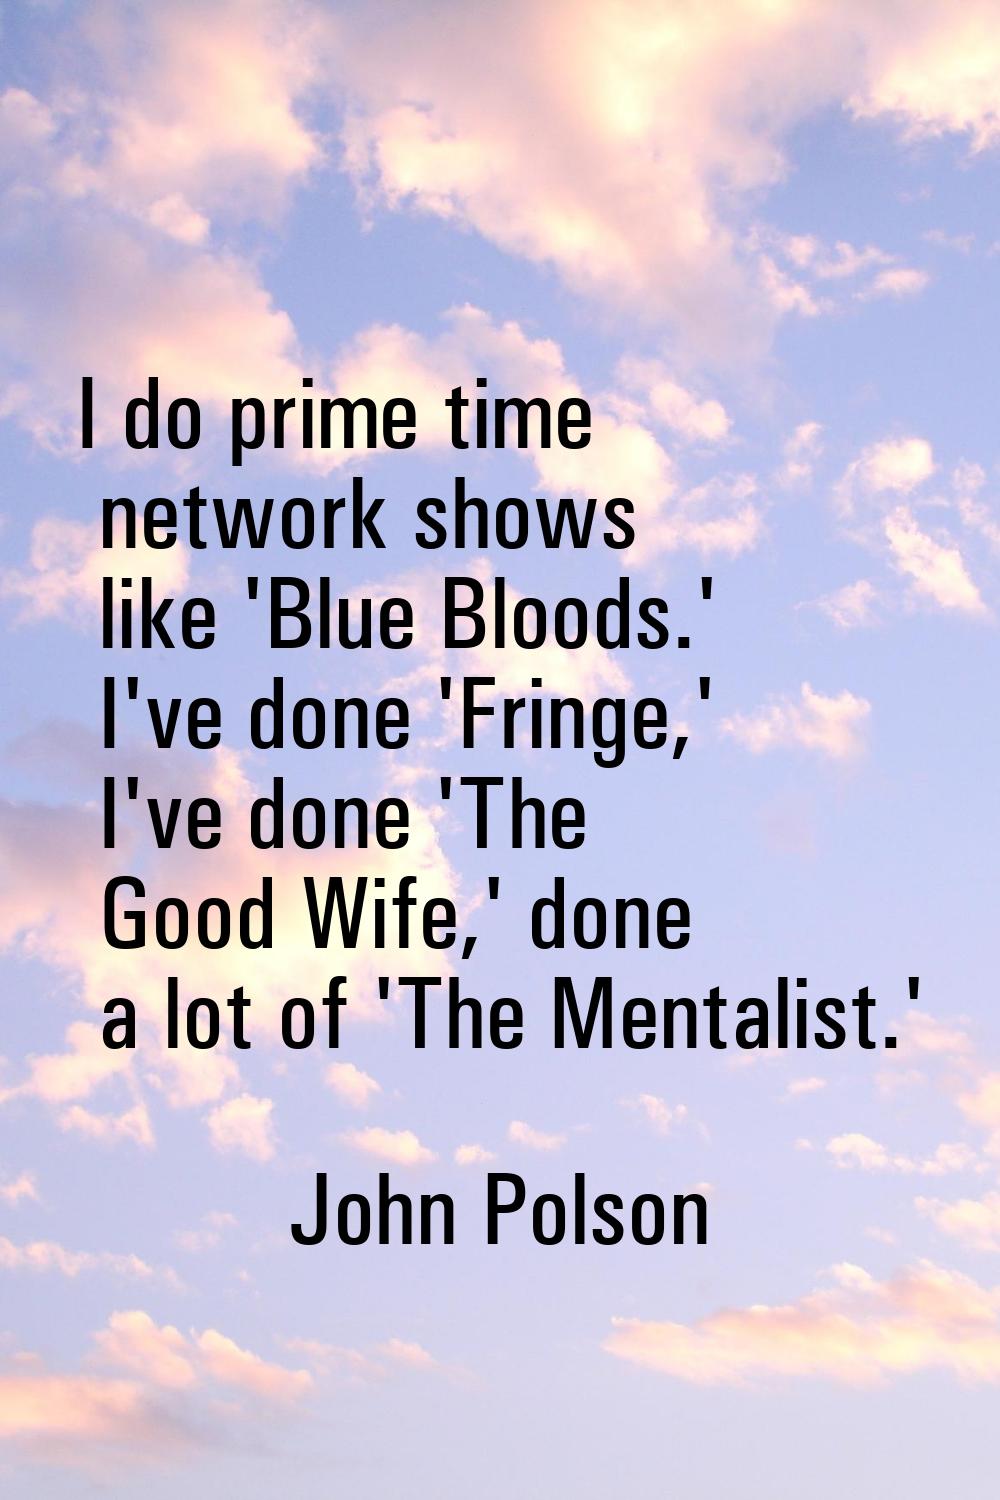 I do prime time network shows like 'Blue Bloods.' I've done 'Fringe,' I've done 'The Good Wife,' do